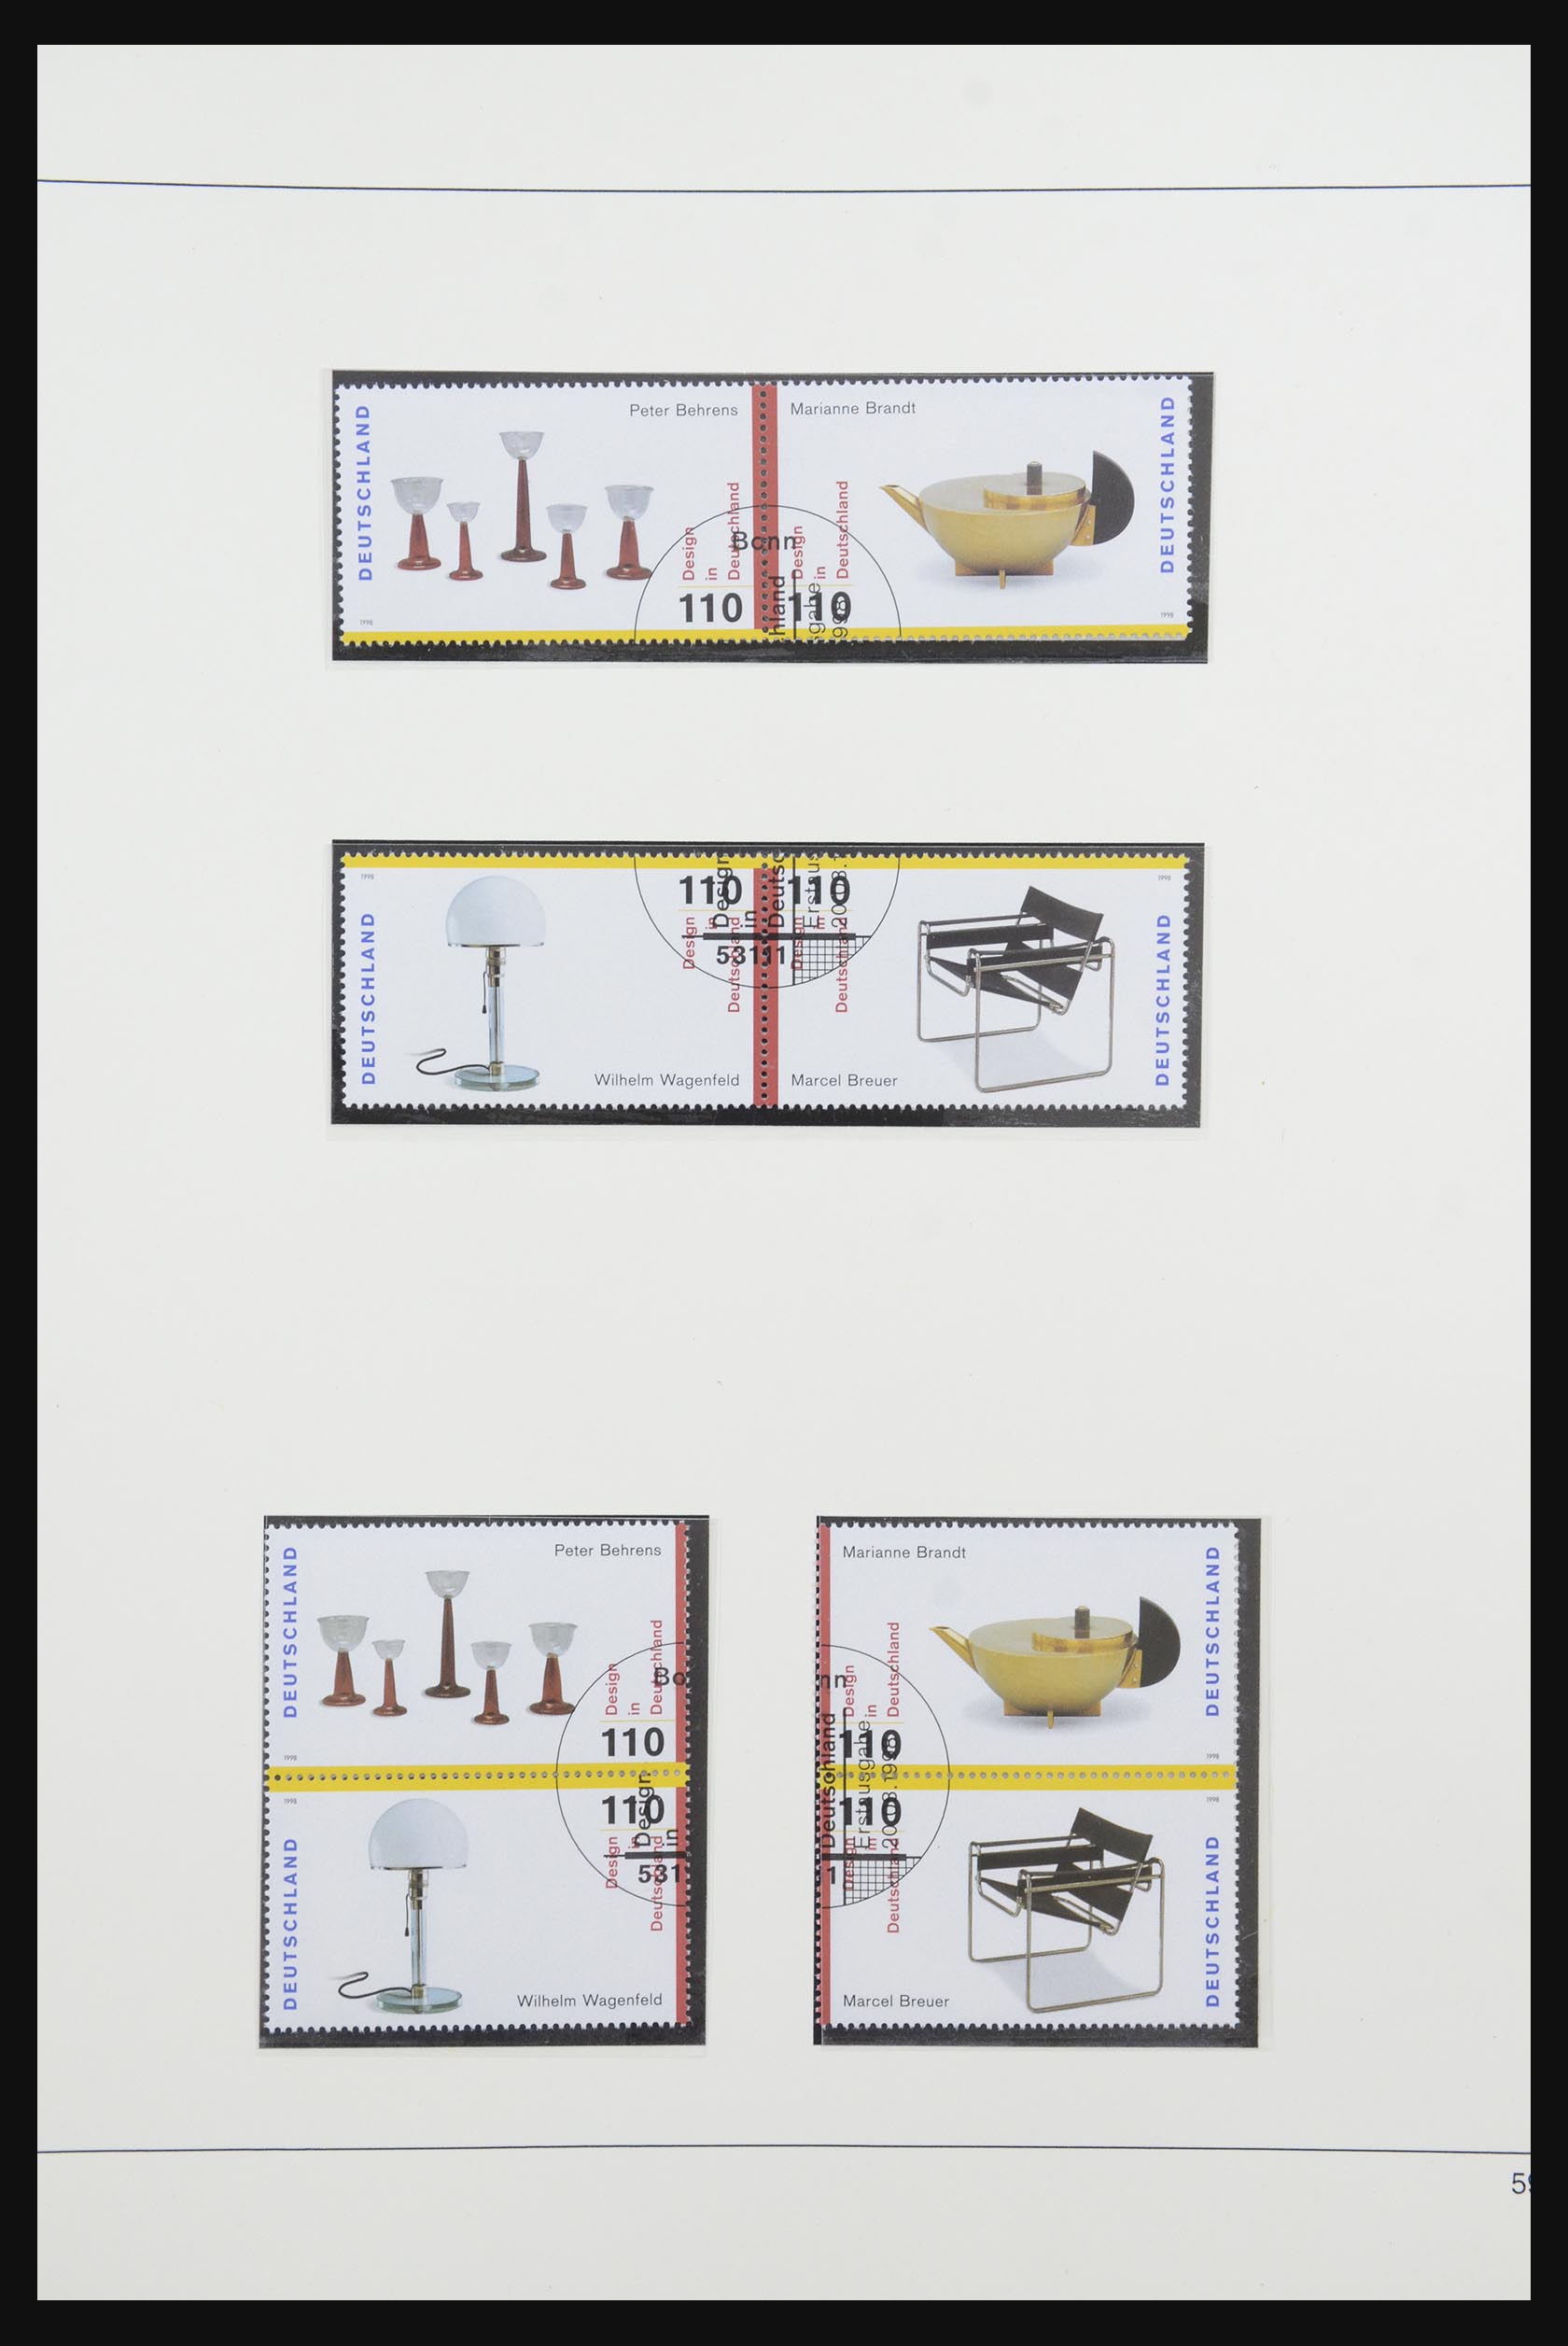 31842 082 - 31842 Bundespost combinaties 1951-2003.